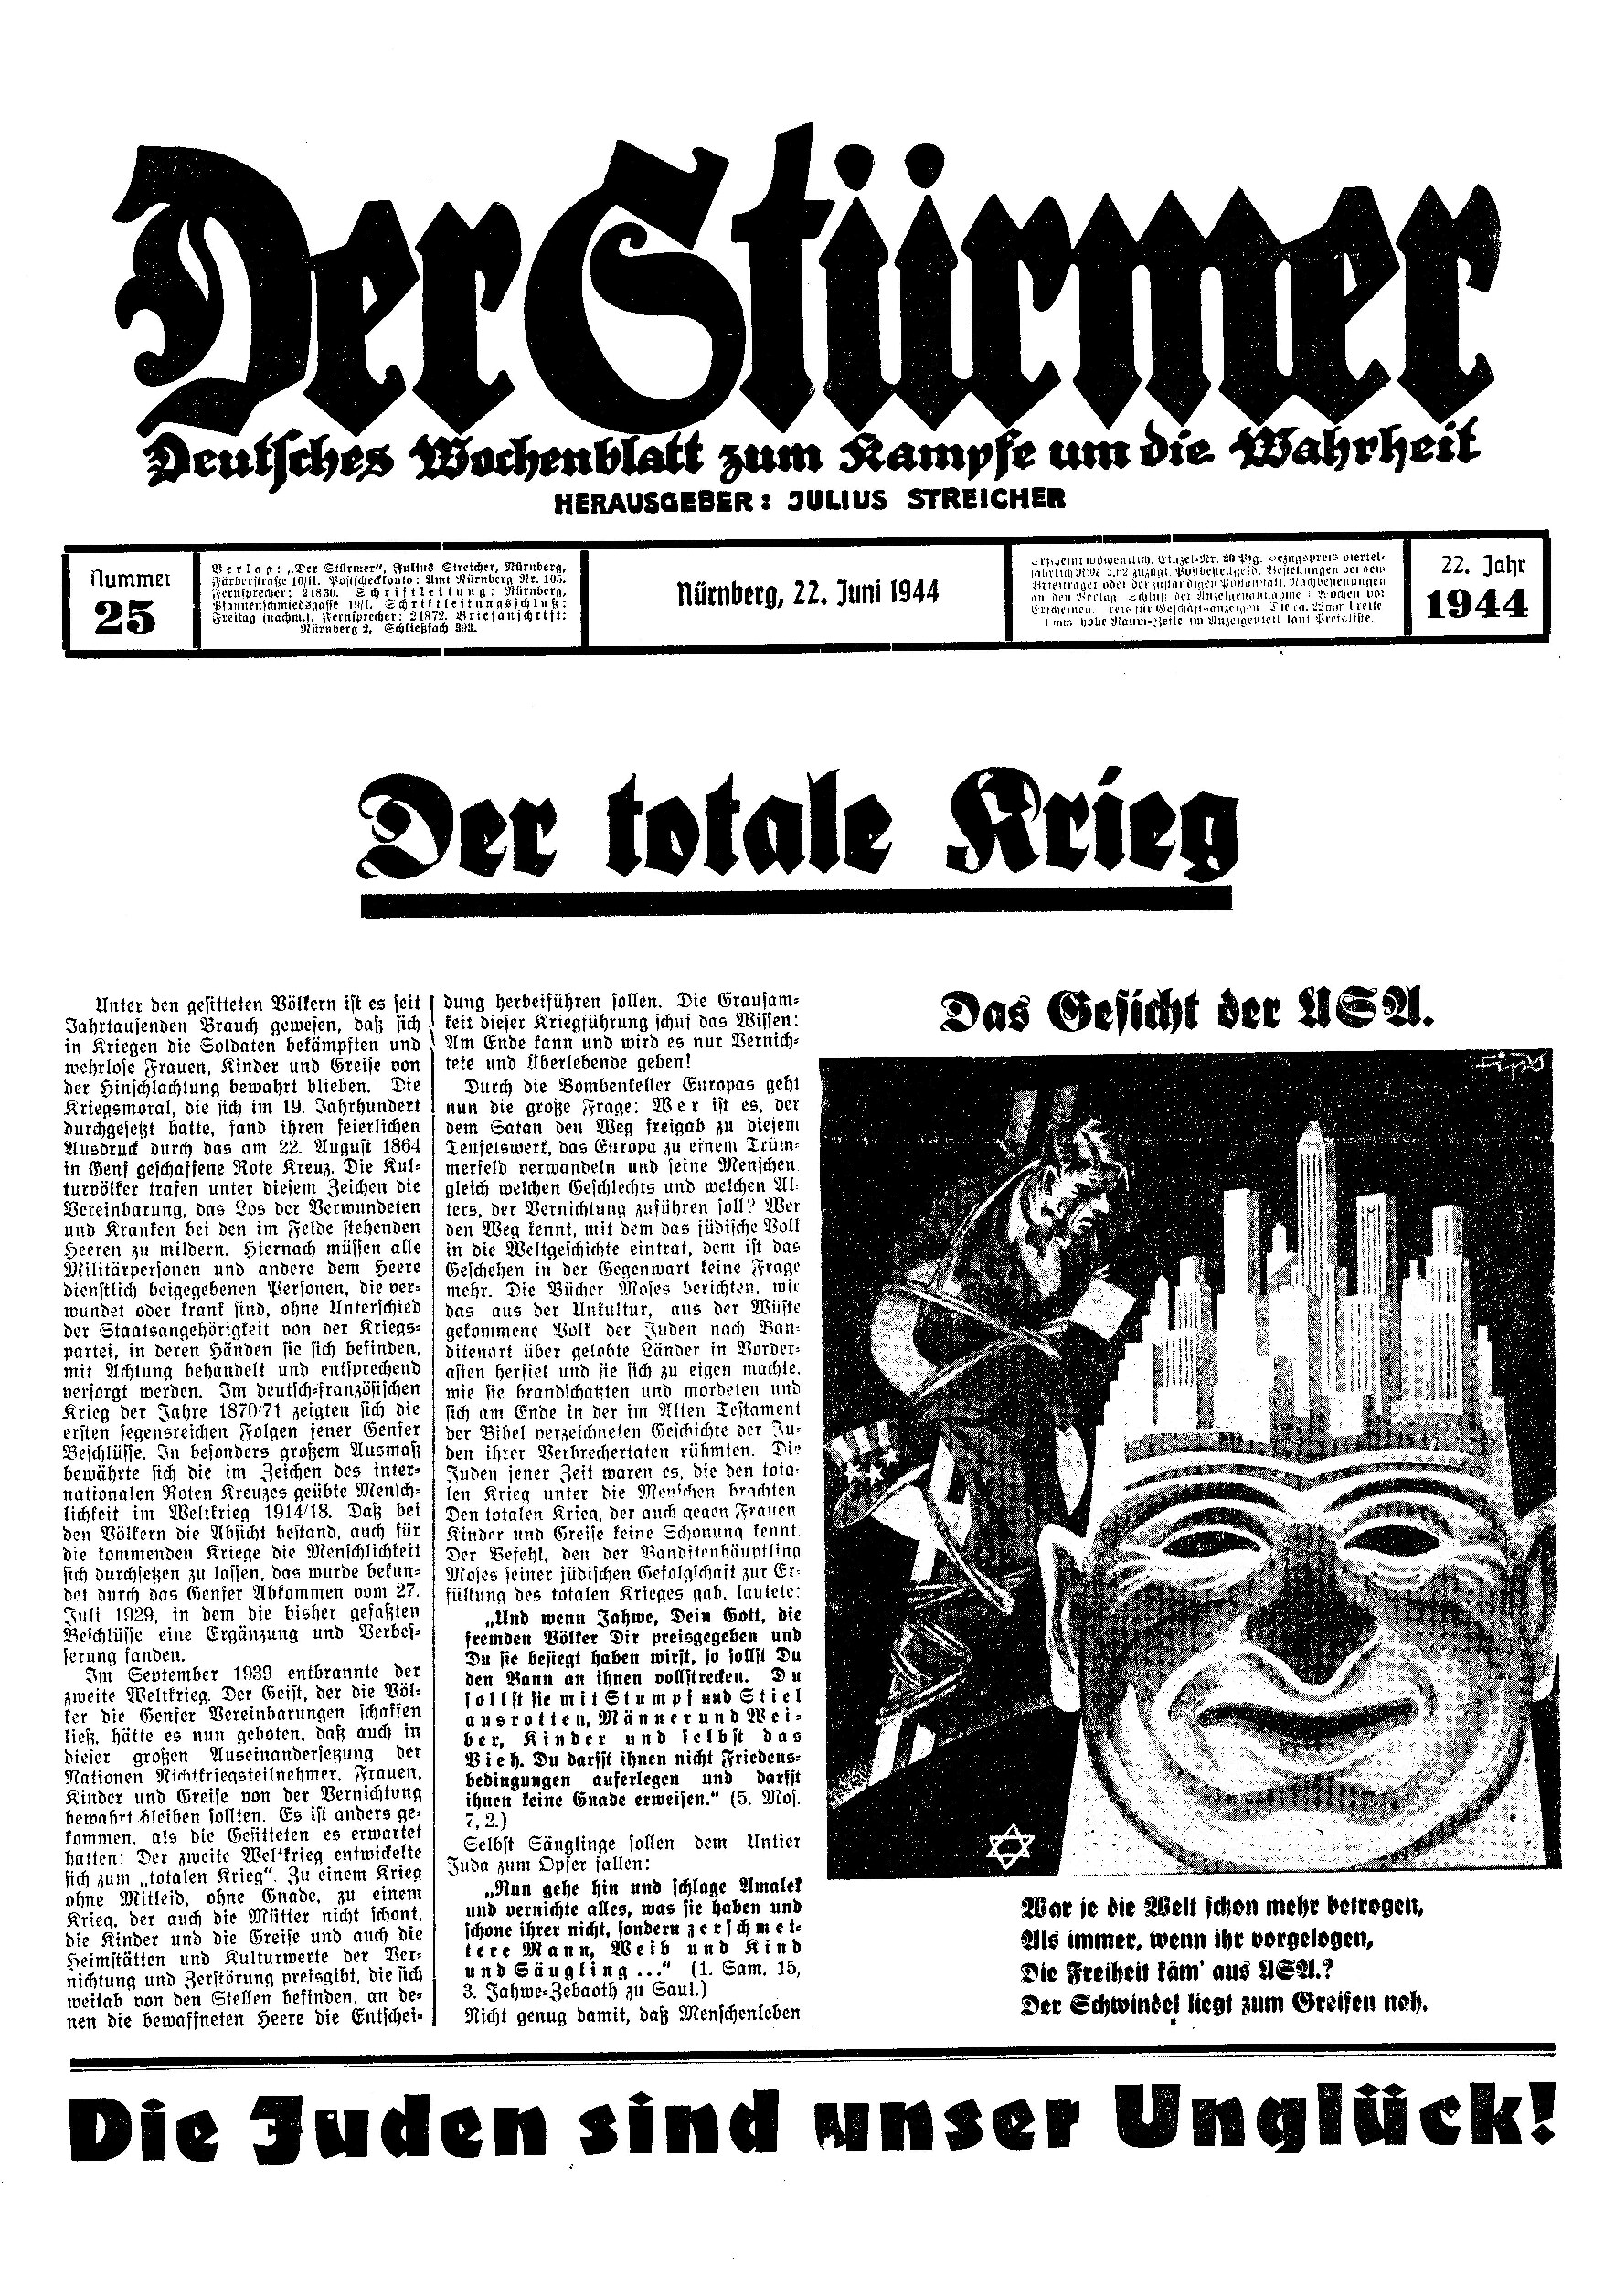 Der Stürmer - 1944 Nr. 25 - Der totale Krieg